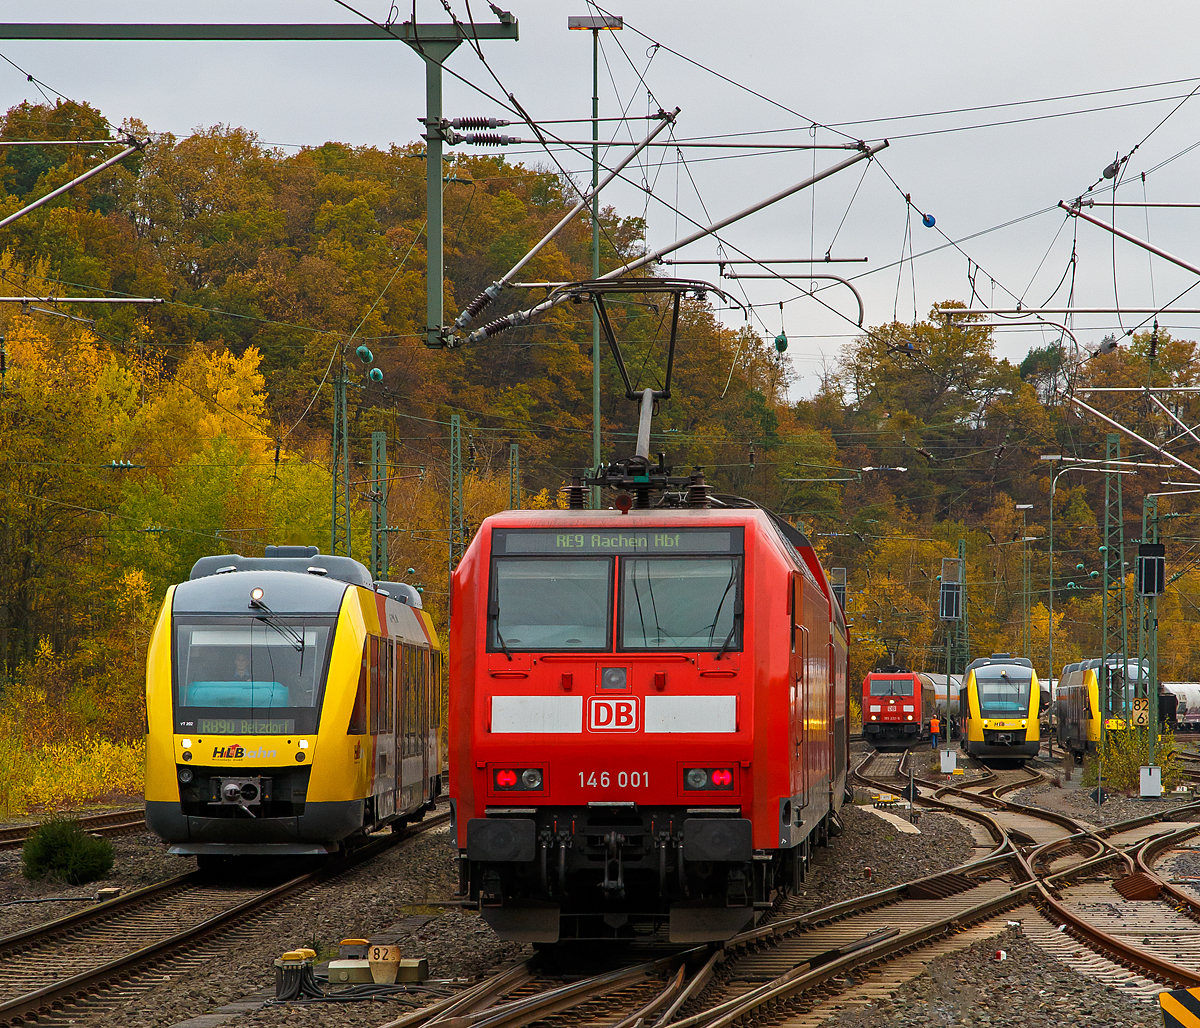 
Nicht „sieben auf einen Streich“, aber immerhin fünf....
Es ist viel los am 11.11.2020 im Bahnhof Betzdorf (Sieg), von links nach rechts:

Der VT 202 (95 80 0640 102-9 D-HEB) ein Alstom Coradia LINT 27 der (Hessische Landesbahn), als RB 90  Westerwald-Sieg-Bahn  (Altenkirchen - Au(Sieg) - Betzdorf), seine Endstation.

Die 146 001-3 (91 80 6146 001-3 D-DB) der DB Regio NRW schiebt den RE 9  rsx - Rhein-Sieg-Express   (Siegen - Köln – Aachen) nun weiter in Richtung Köln.

Die 185 232-6 und eine weitere stehen mit einem gemischten Güterzug im Rbf, vermutlich musste ein Problem behoben werden. 

Noch steht der VT 261 (95 80 0648 161-7 D-HEB / 95 80 0648 661-6 D-HEB), ein Alstom Coradia LINT 41, fährt am 05.01.2018 der HLB (Hessische Landesbahn) im Abstellbereich. Nun wo das Gleis 106 vom ausfahrenden RE 9 frei gefahren wird, fährt er ein und wird als RB 93  Rothaarbahn  nach Bad Berleburg (über Siegen und Kreuztal) bereitgestellt.

Hinter den Masten versteckt sich der VT 267 (95 80 0648 167-4 D-HEB / 95 80 0648 667-3 D-HEB), ein Alstom Coradia LINT 41 der HLB (Hessische Landesbahn), im Abstellbereich. Er hatte kurz vor dem RE 9, den Bahnhof als RB 93  Rothaarbahn  von Bad Berleburg erreicht und ist dann ich die Abstellgruppe gefahren.